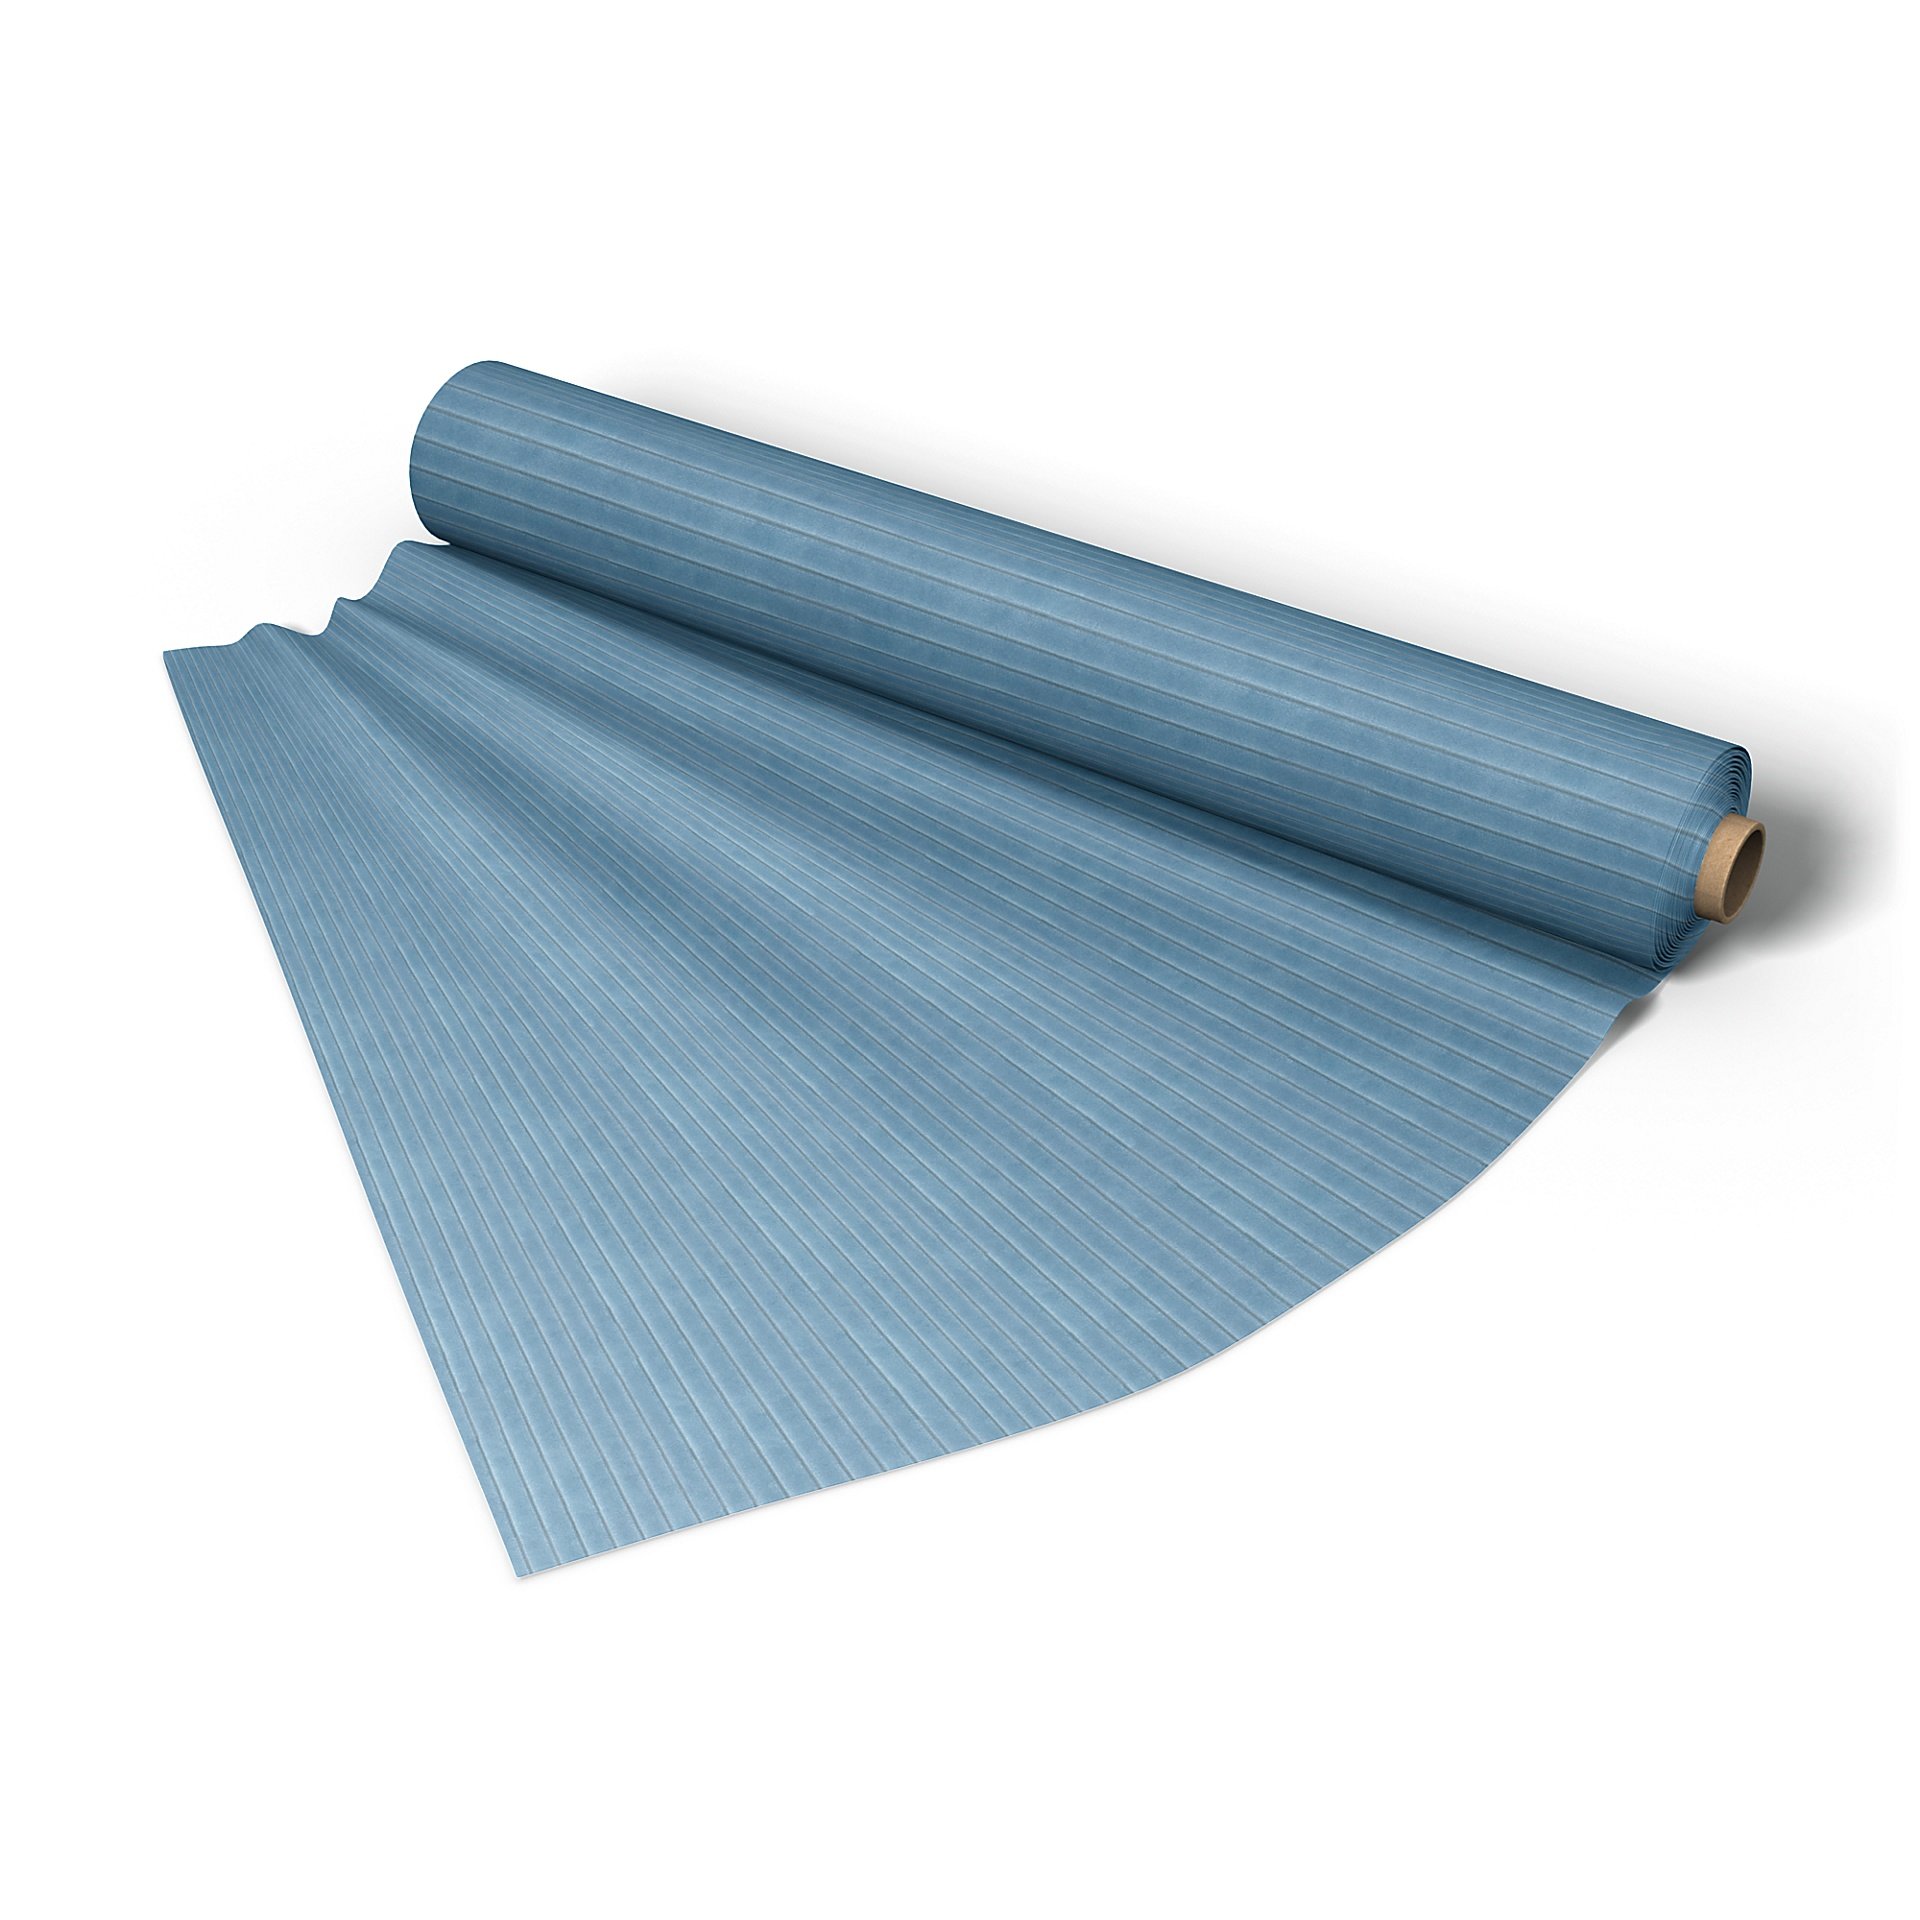 Fabric per metre, Sky Blue, Corduroy - Bemz